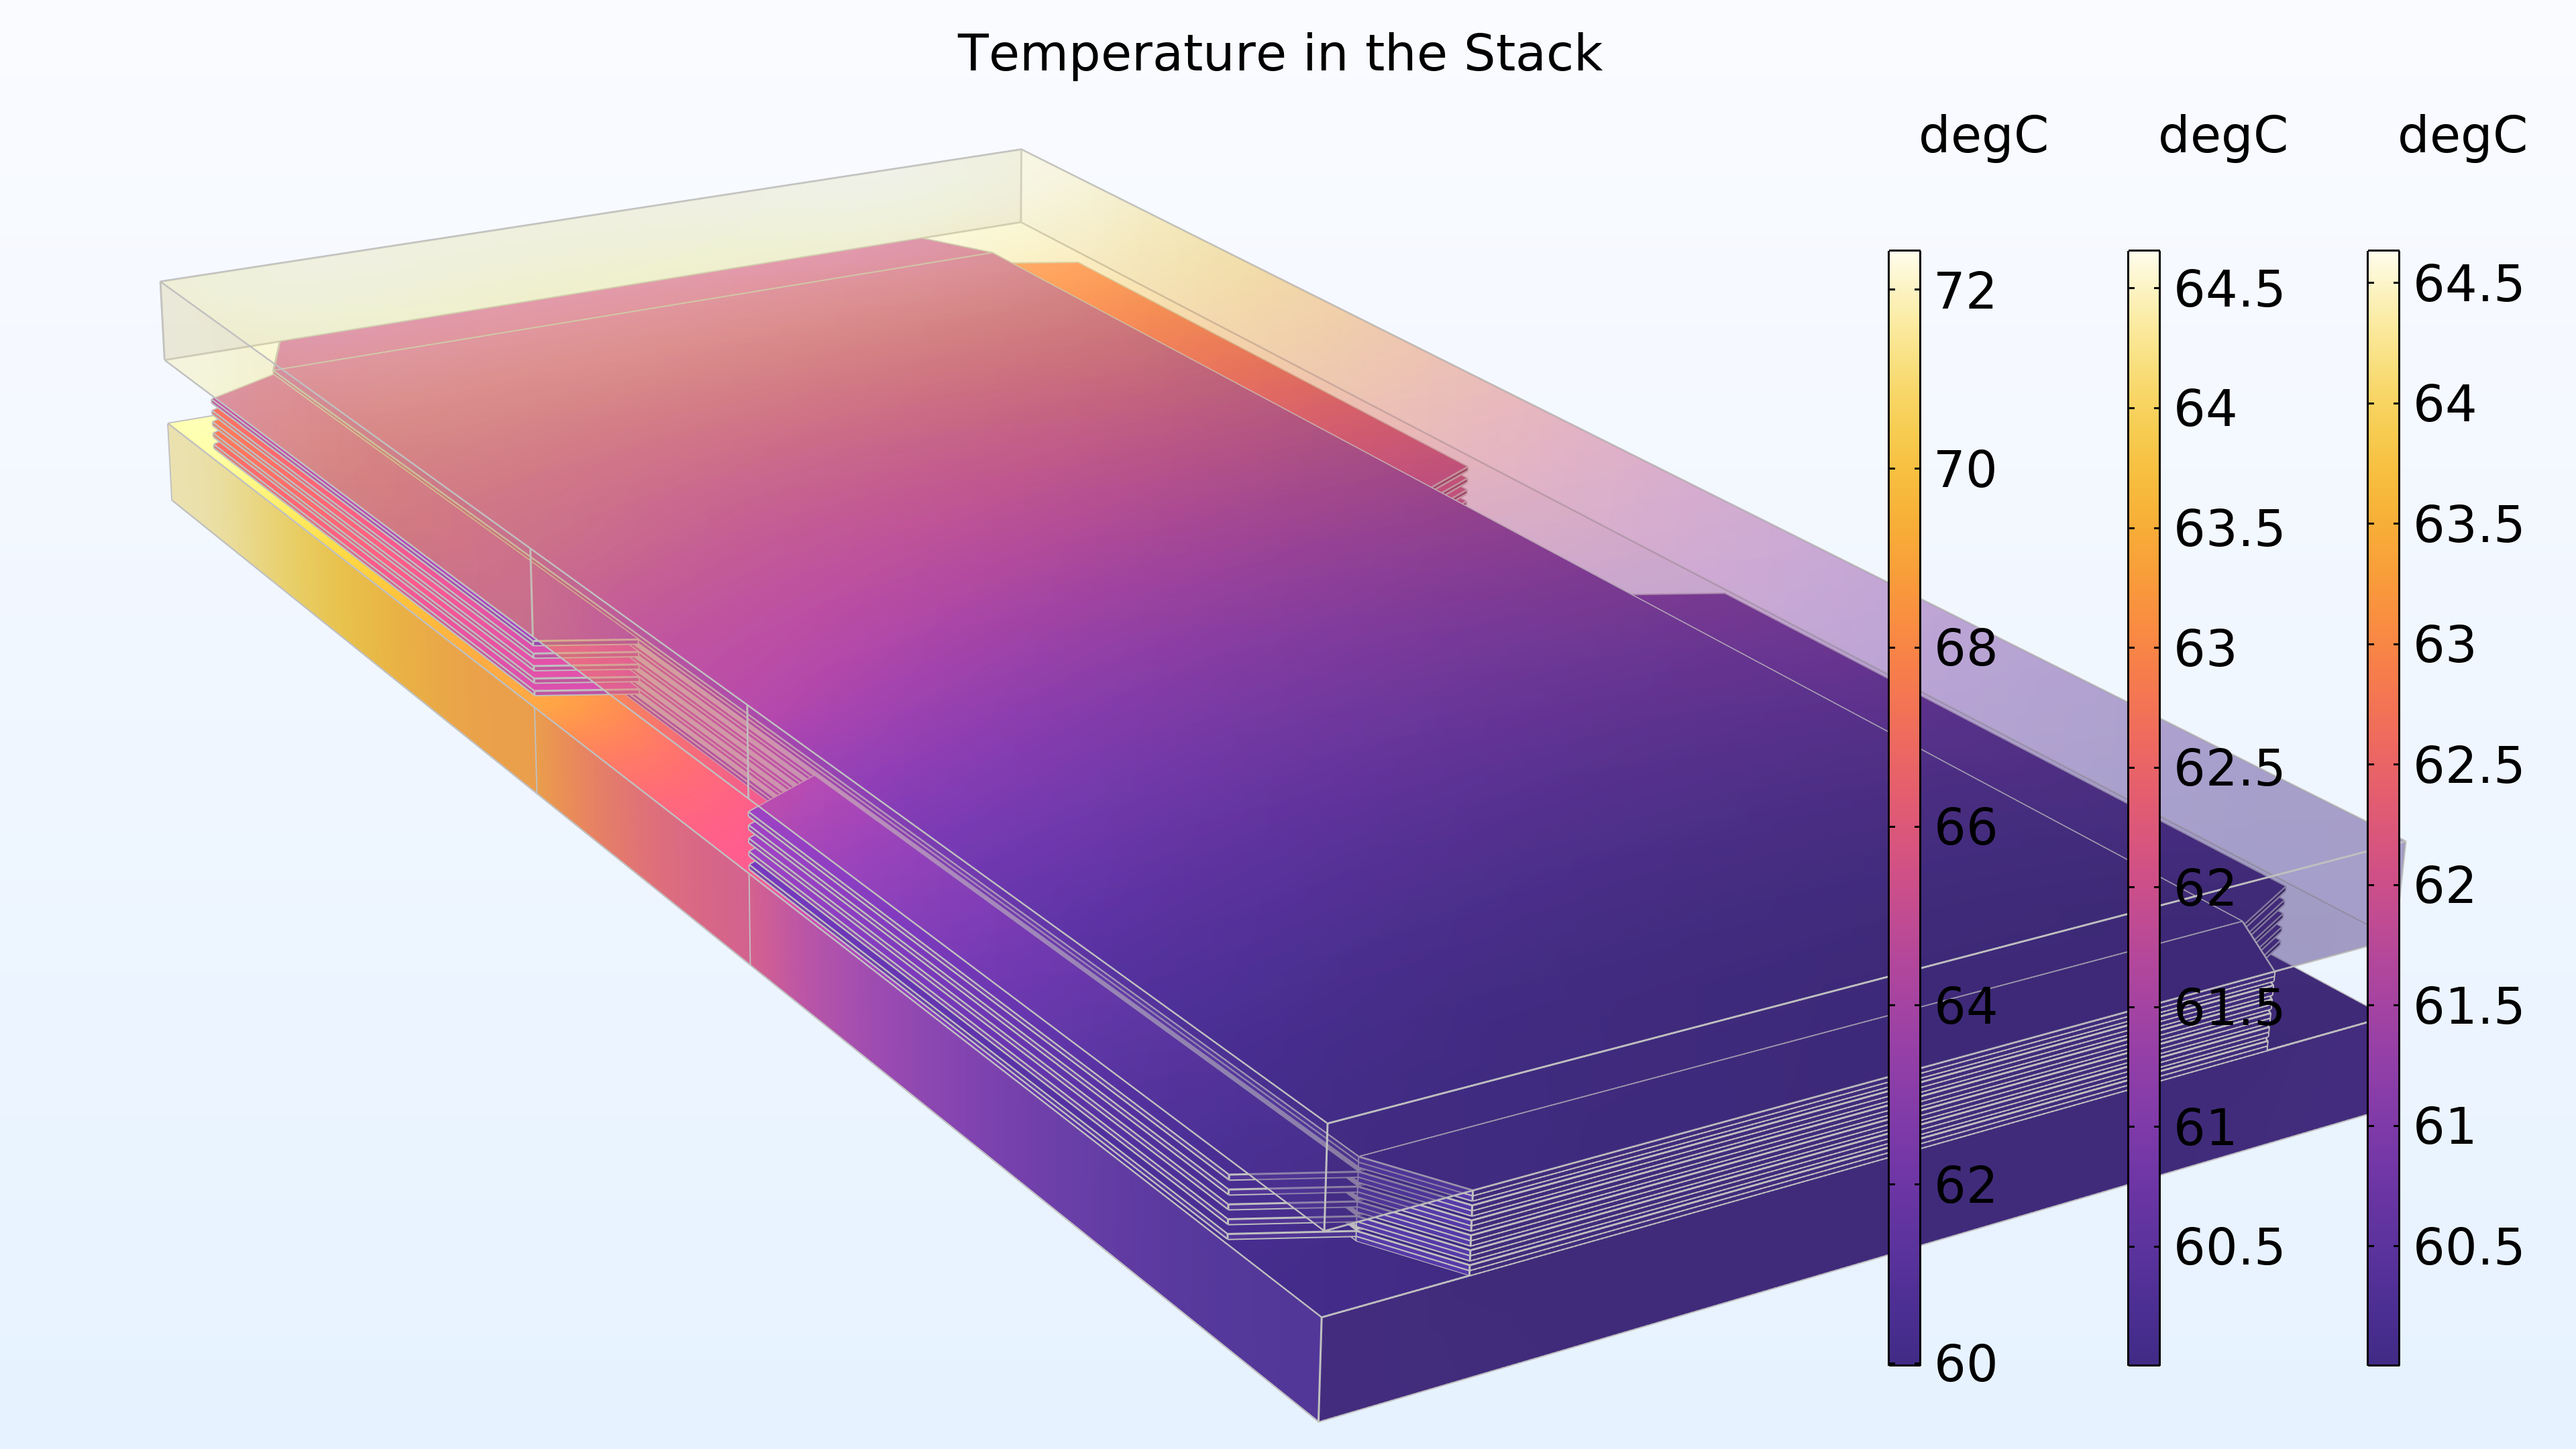 用 HeatCamera 颜色表显示电池堆中温度的图，其中模型的最左边是黄色、橙色和浅粉色、紫色；中间是紫色和粉色；最右边是深紫色。